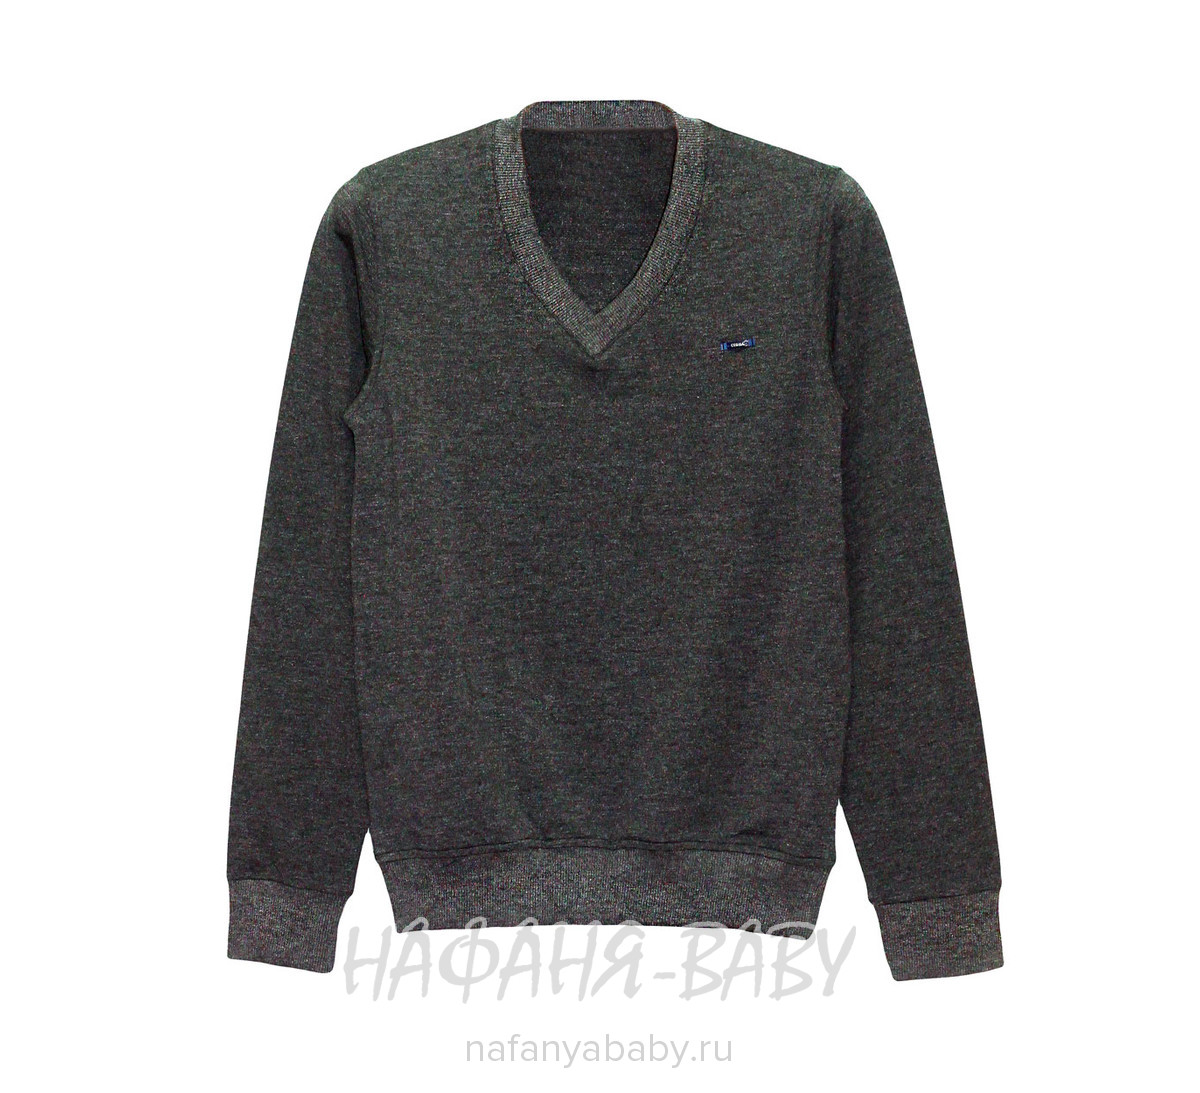 Детский пуловер CEGISA арт: 4605, 10-15 лет, цвет темно-серый, оптом Турция